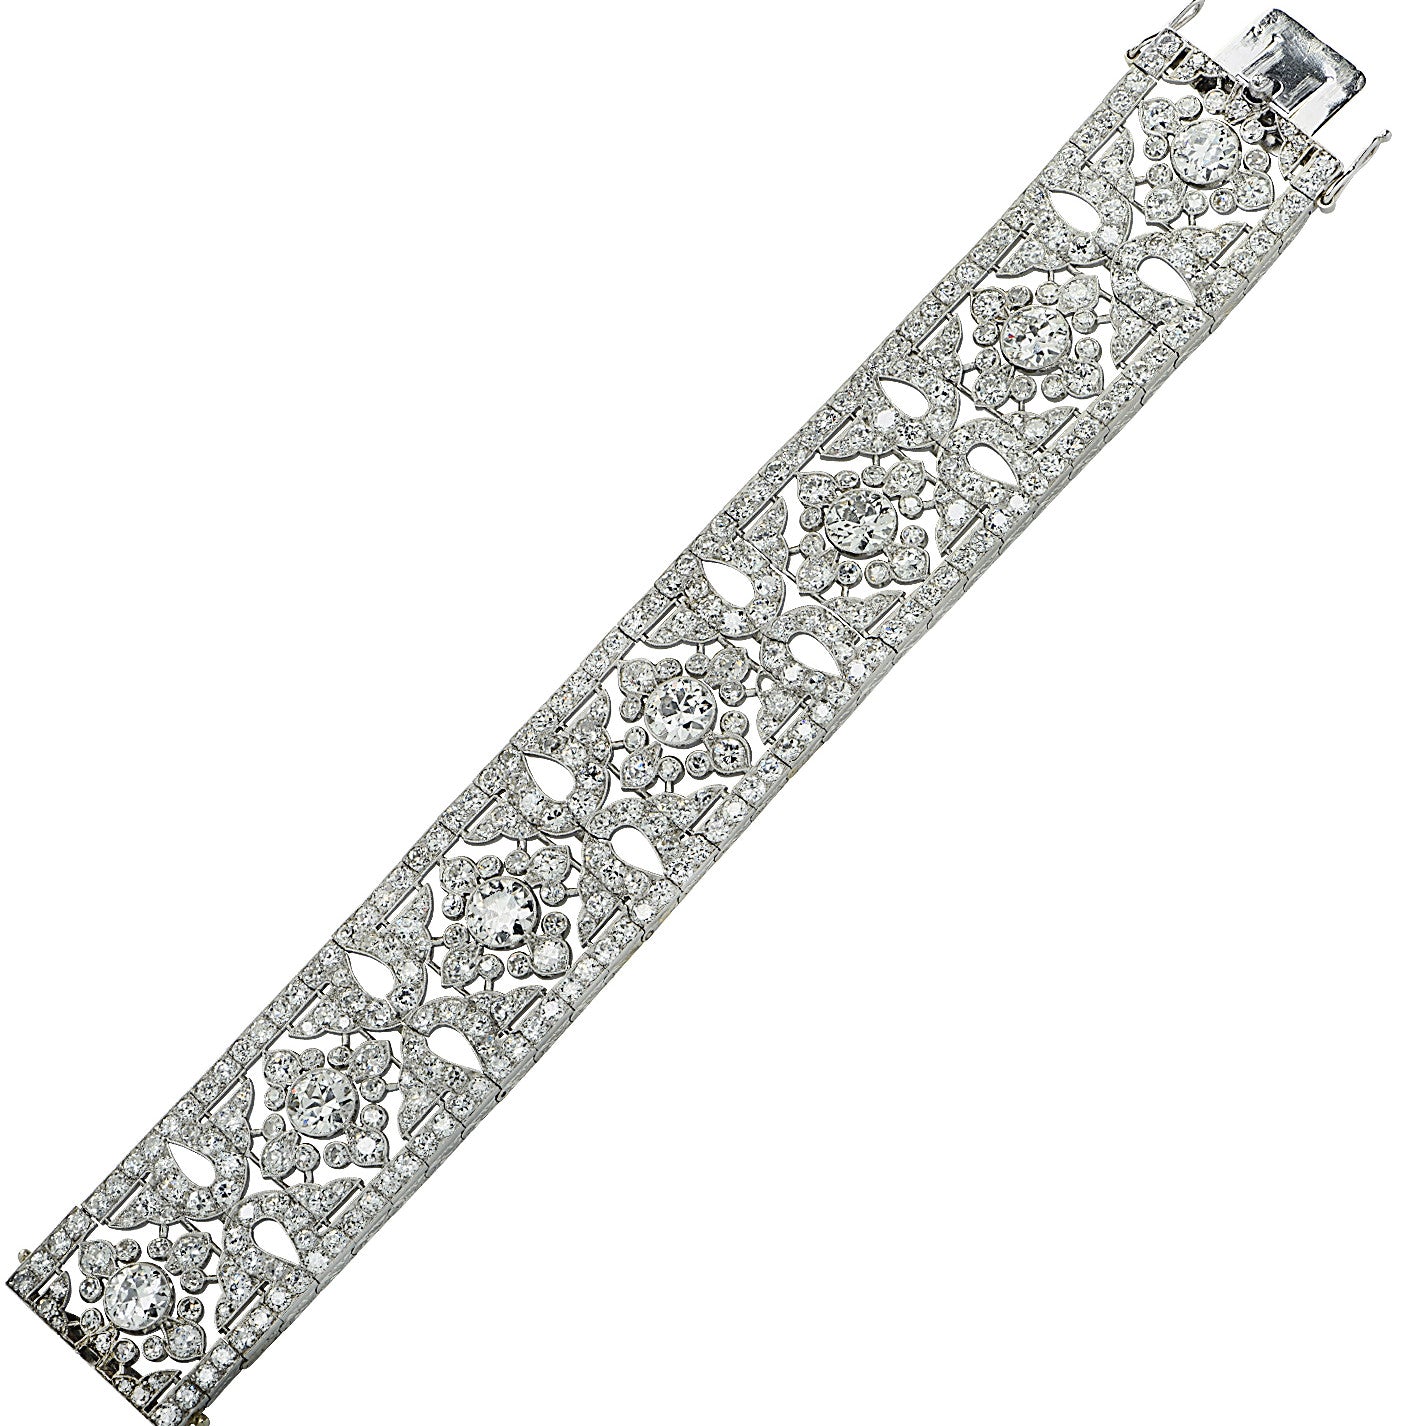 Cartier French Belle Epoque Platinum Diamond Bracelet laid out front view